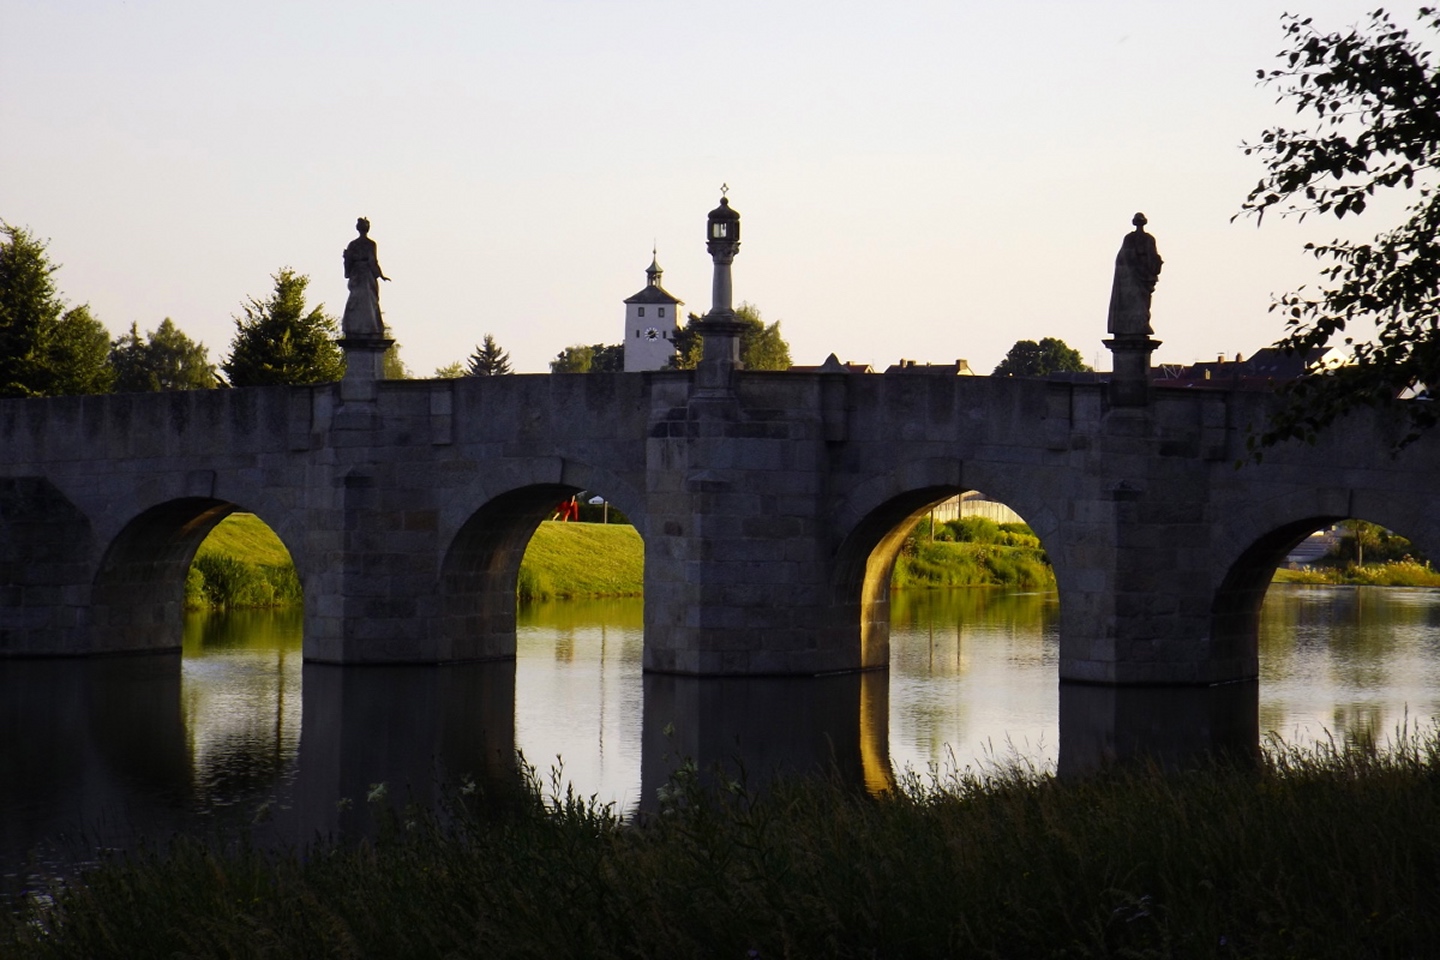 Brückenfiguren kurz vor dem Sonnenuntergang